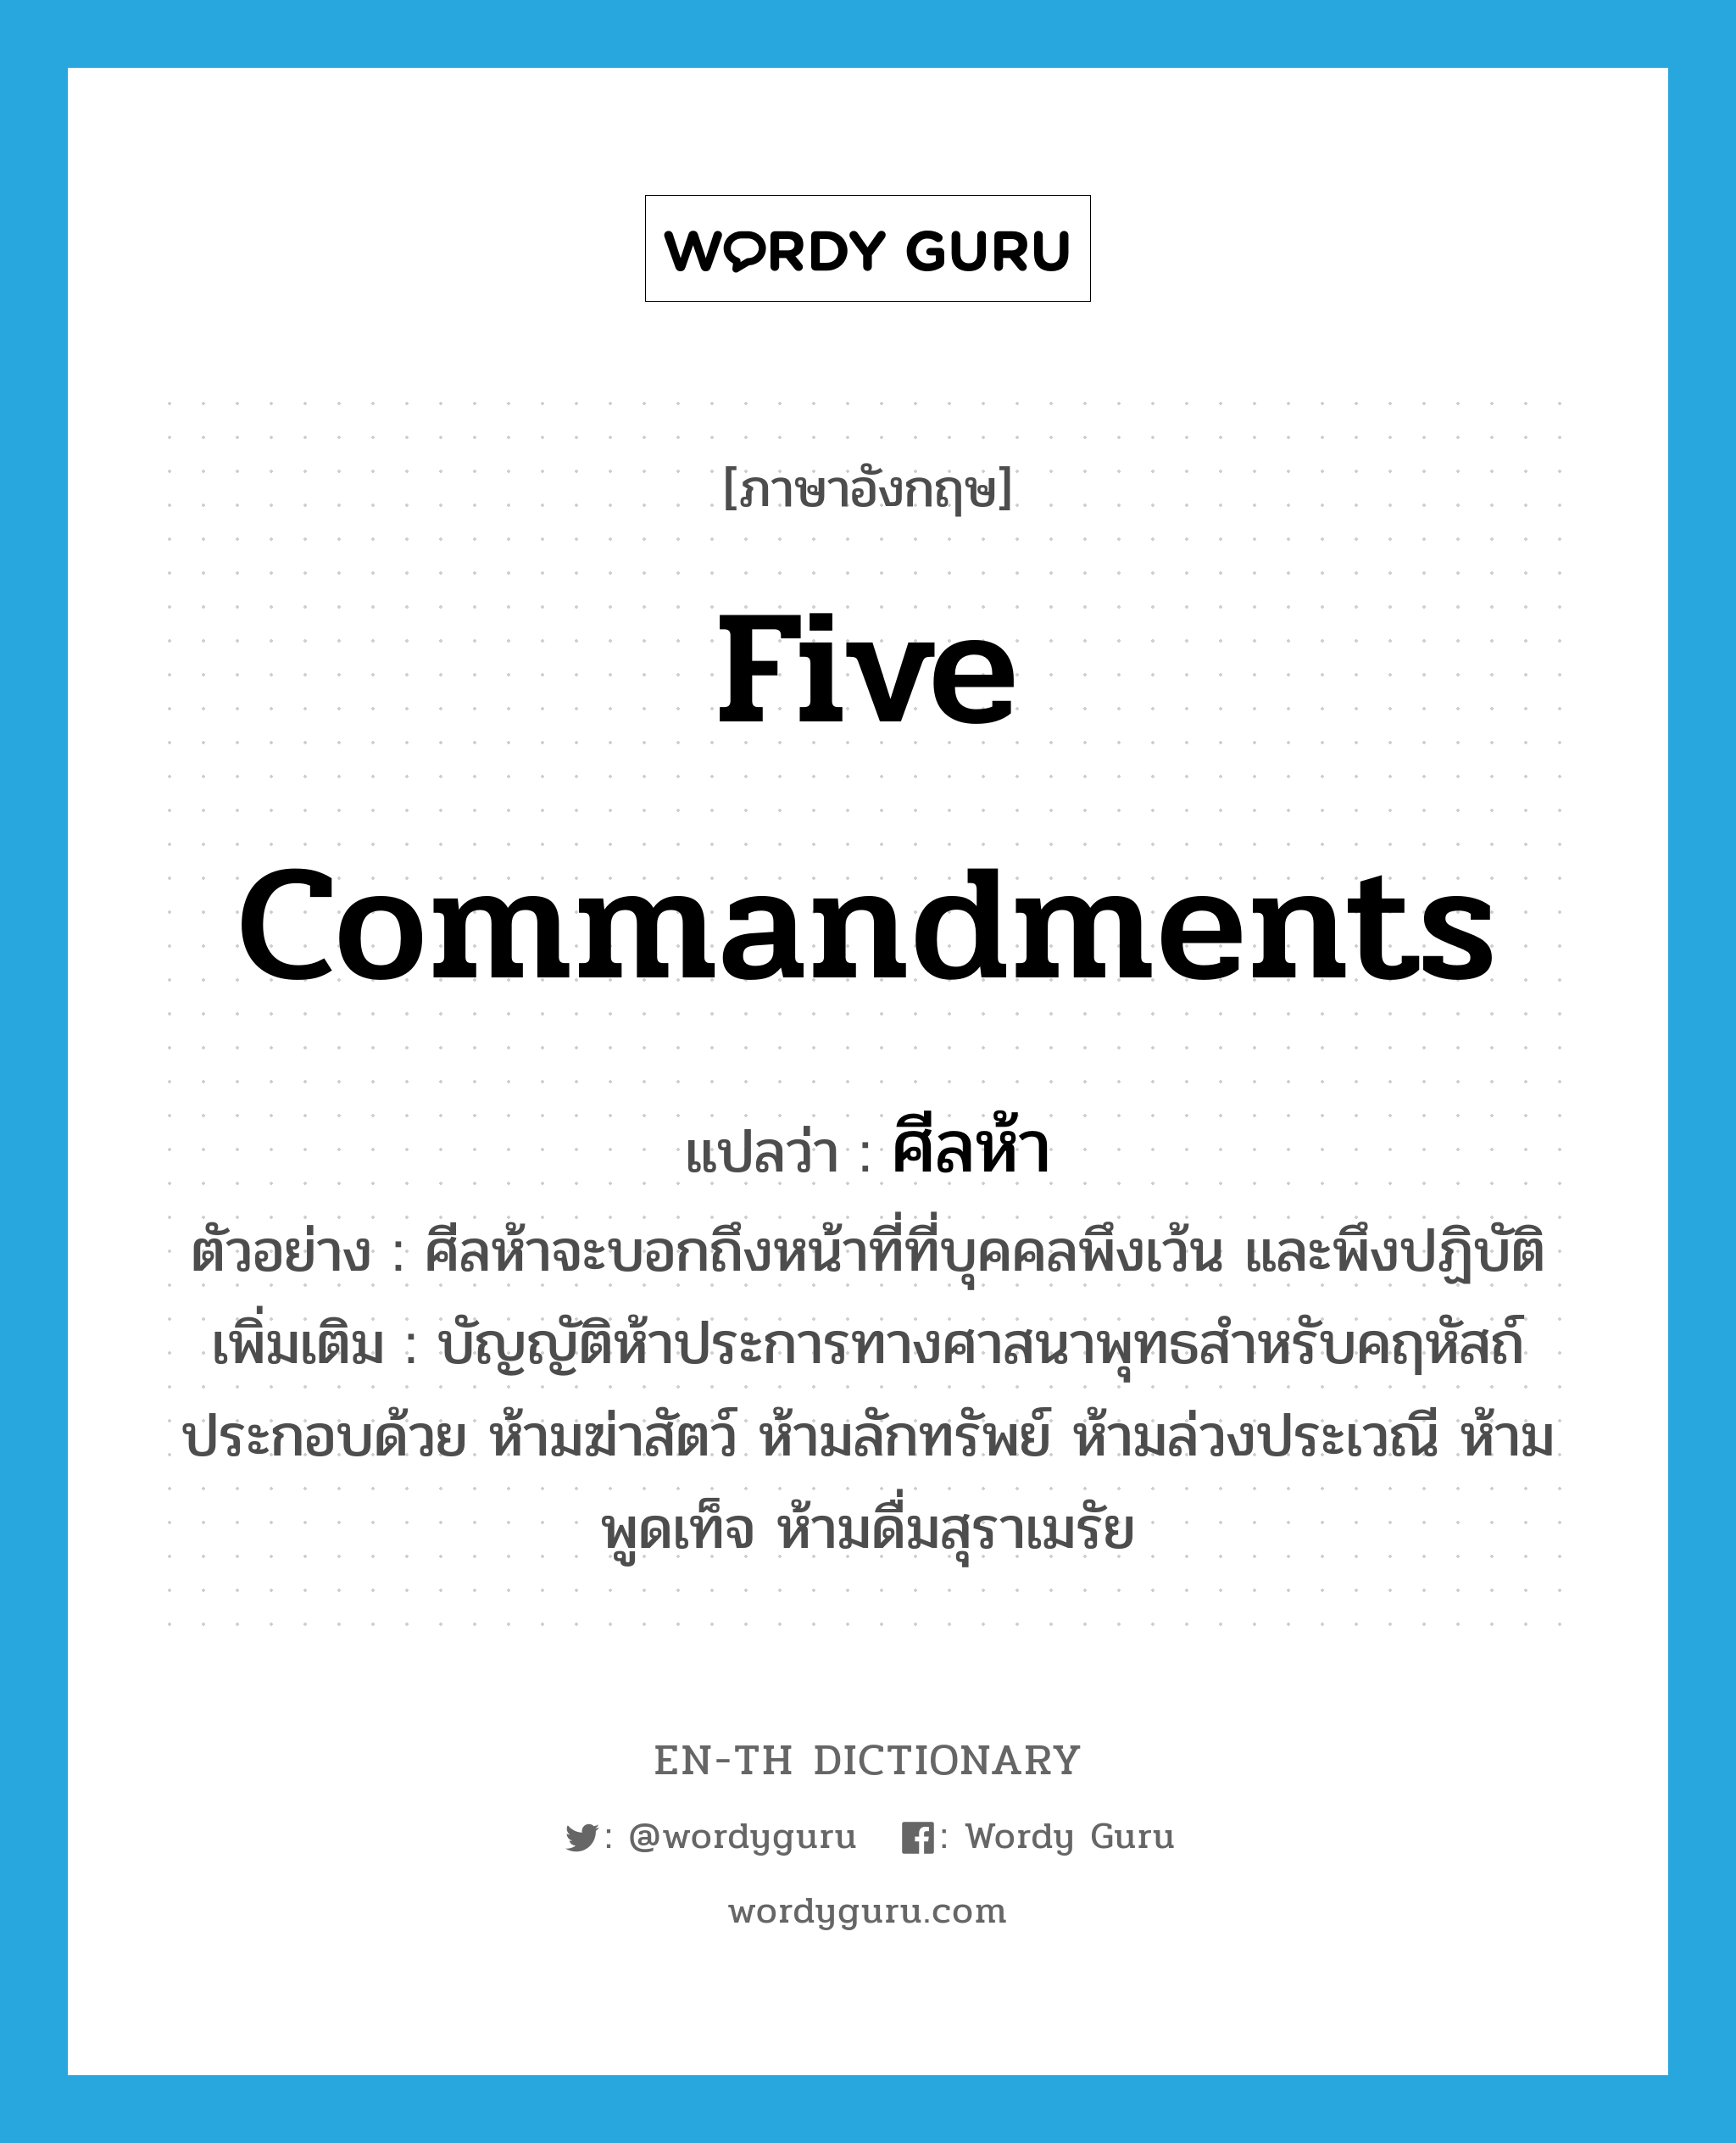 five commandments แปลว่า?, คำศัพท์ภาษาอังกฤษ five commandments แปลว่า ศีลห้า ประเภท N ตัวอย่าง ศีลห้าจะบอกถึงหน้าที่ที่บุคคลพึงเว้น และพึงปฏิบัติ เพิ่มเติม บัญญัติห้าประการทางศาสนาพุทธสำหรับคฤหัสถ์ ประกอบด้วย ห้ามฆ่าสัตว์ ห้ามลักทรัพย์ ห้ามล่วงประเวณี ห้ามพูดเท็จ ห้ามดื่มสุราเมรัย หมวด N